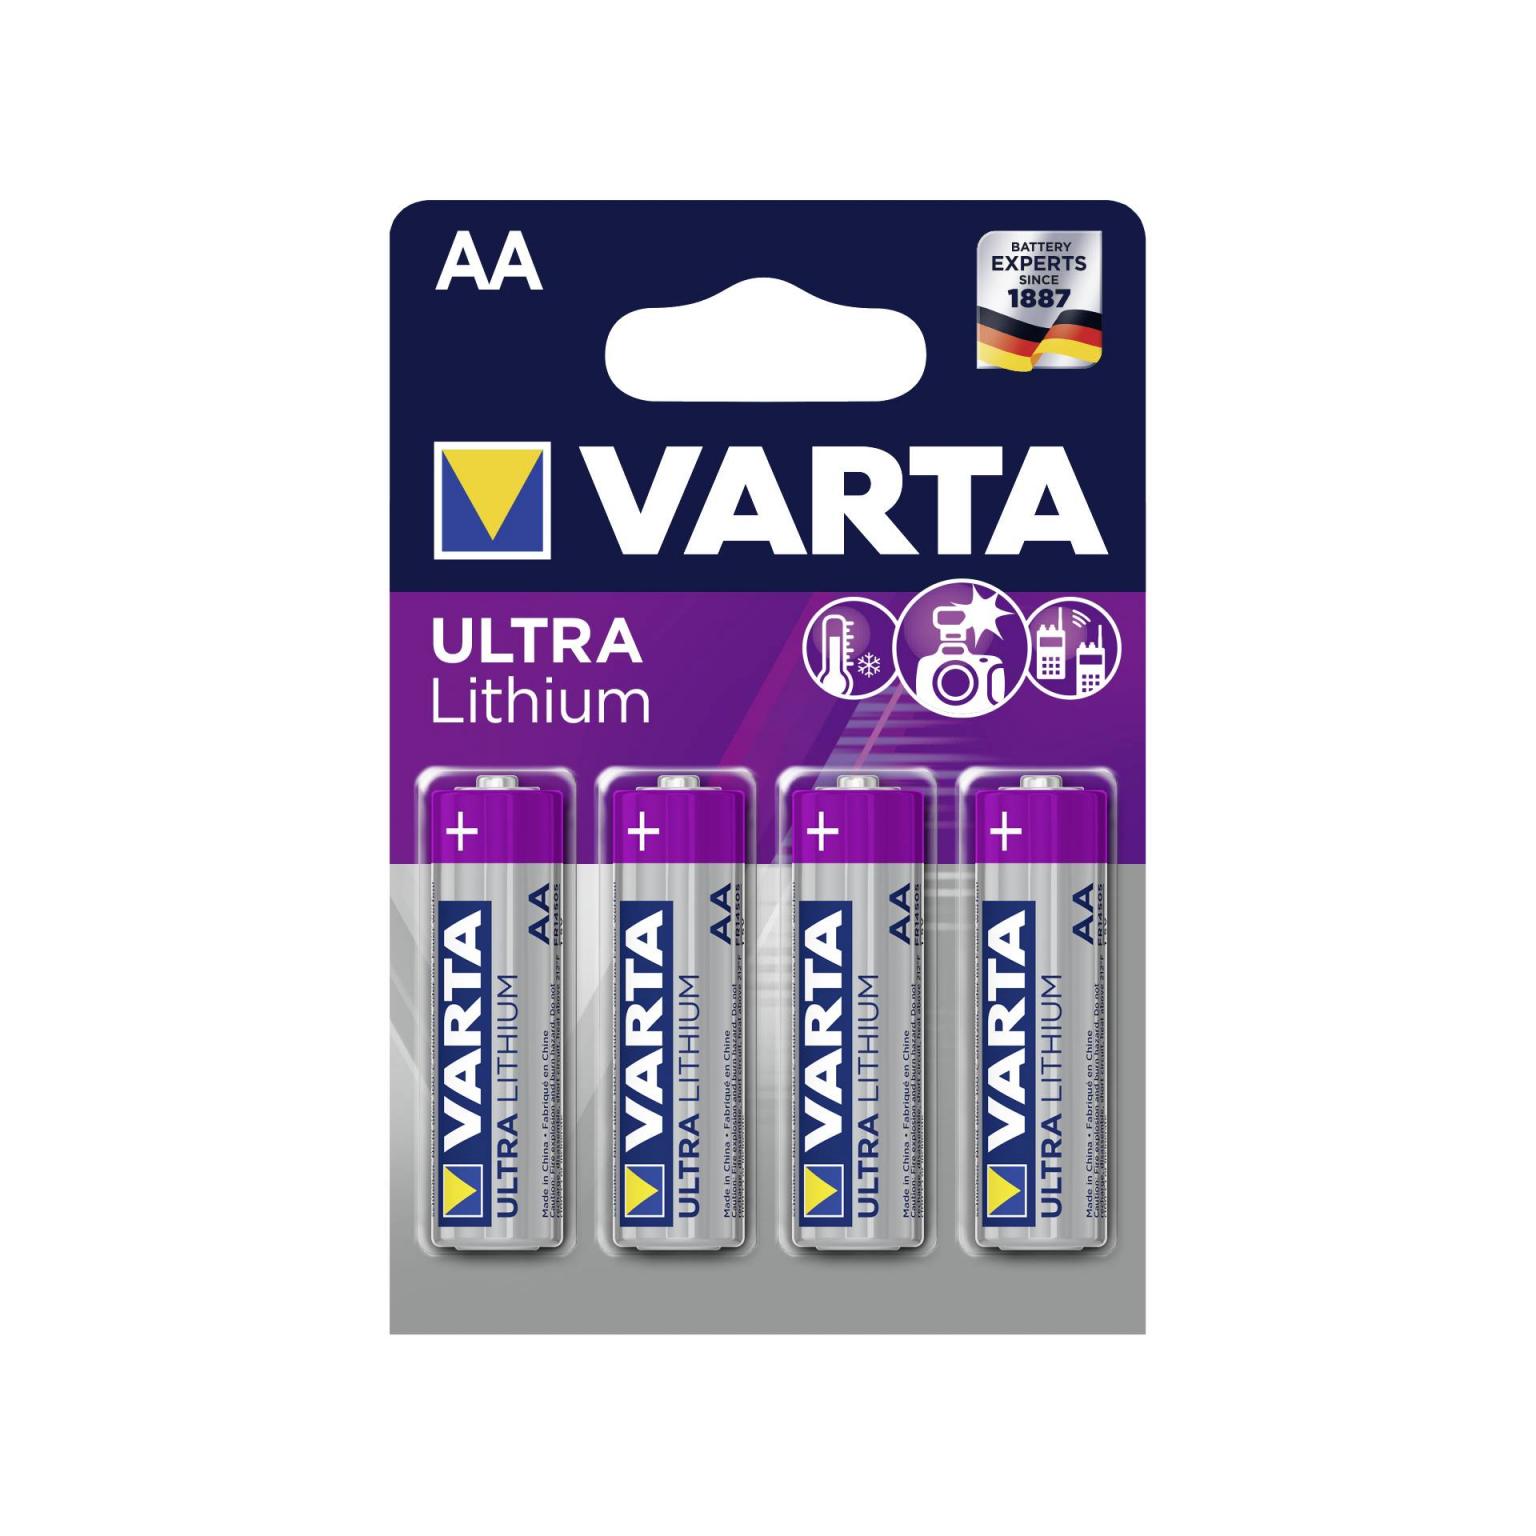 10x4 Varta Ultra Lithium Mignon AA LR 6 - 06106301404 - Varta